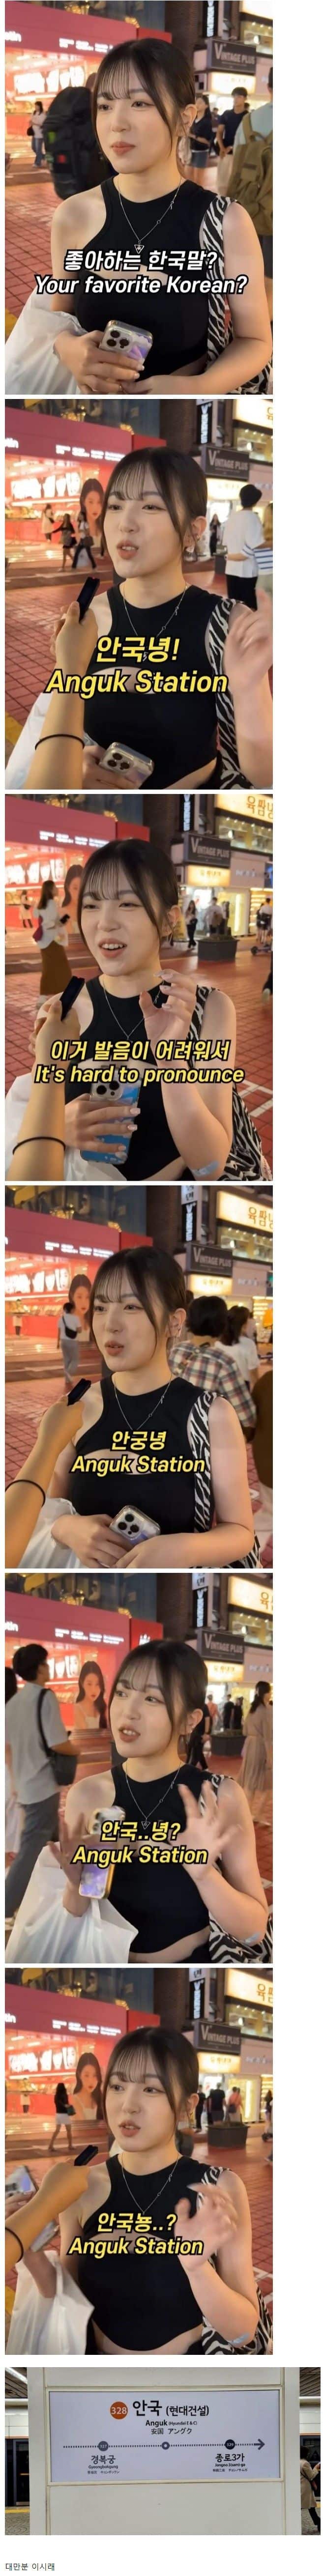 어느 외국녀가 밝힌 좋아하는 한국말
            ㄷㄷ